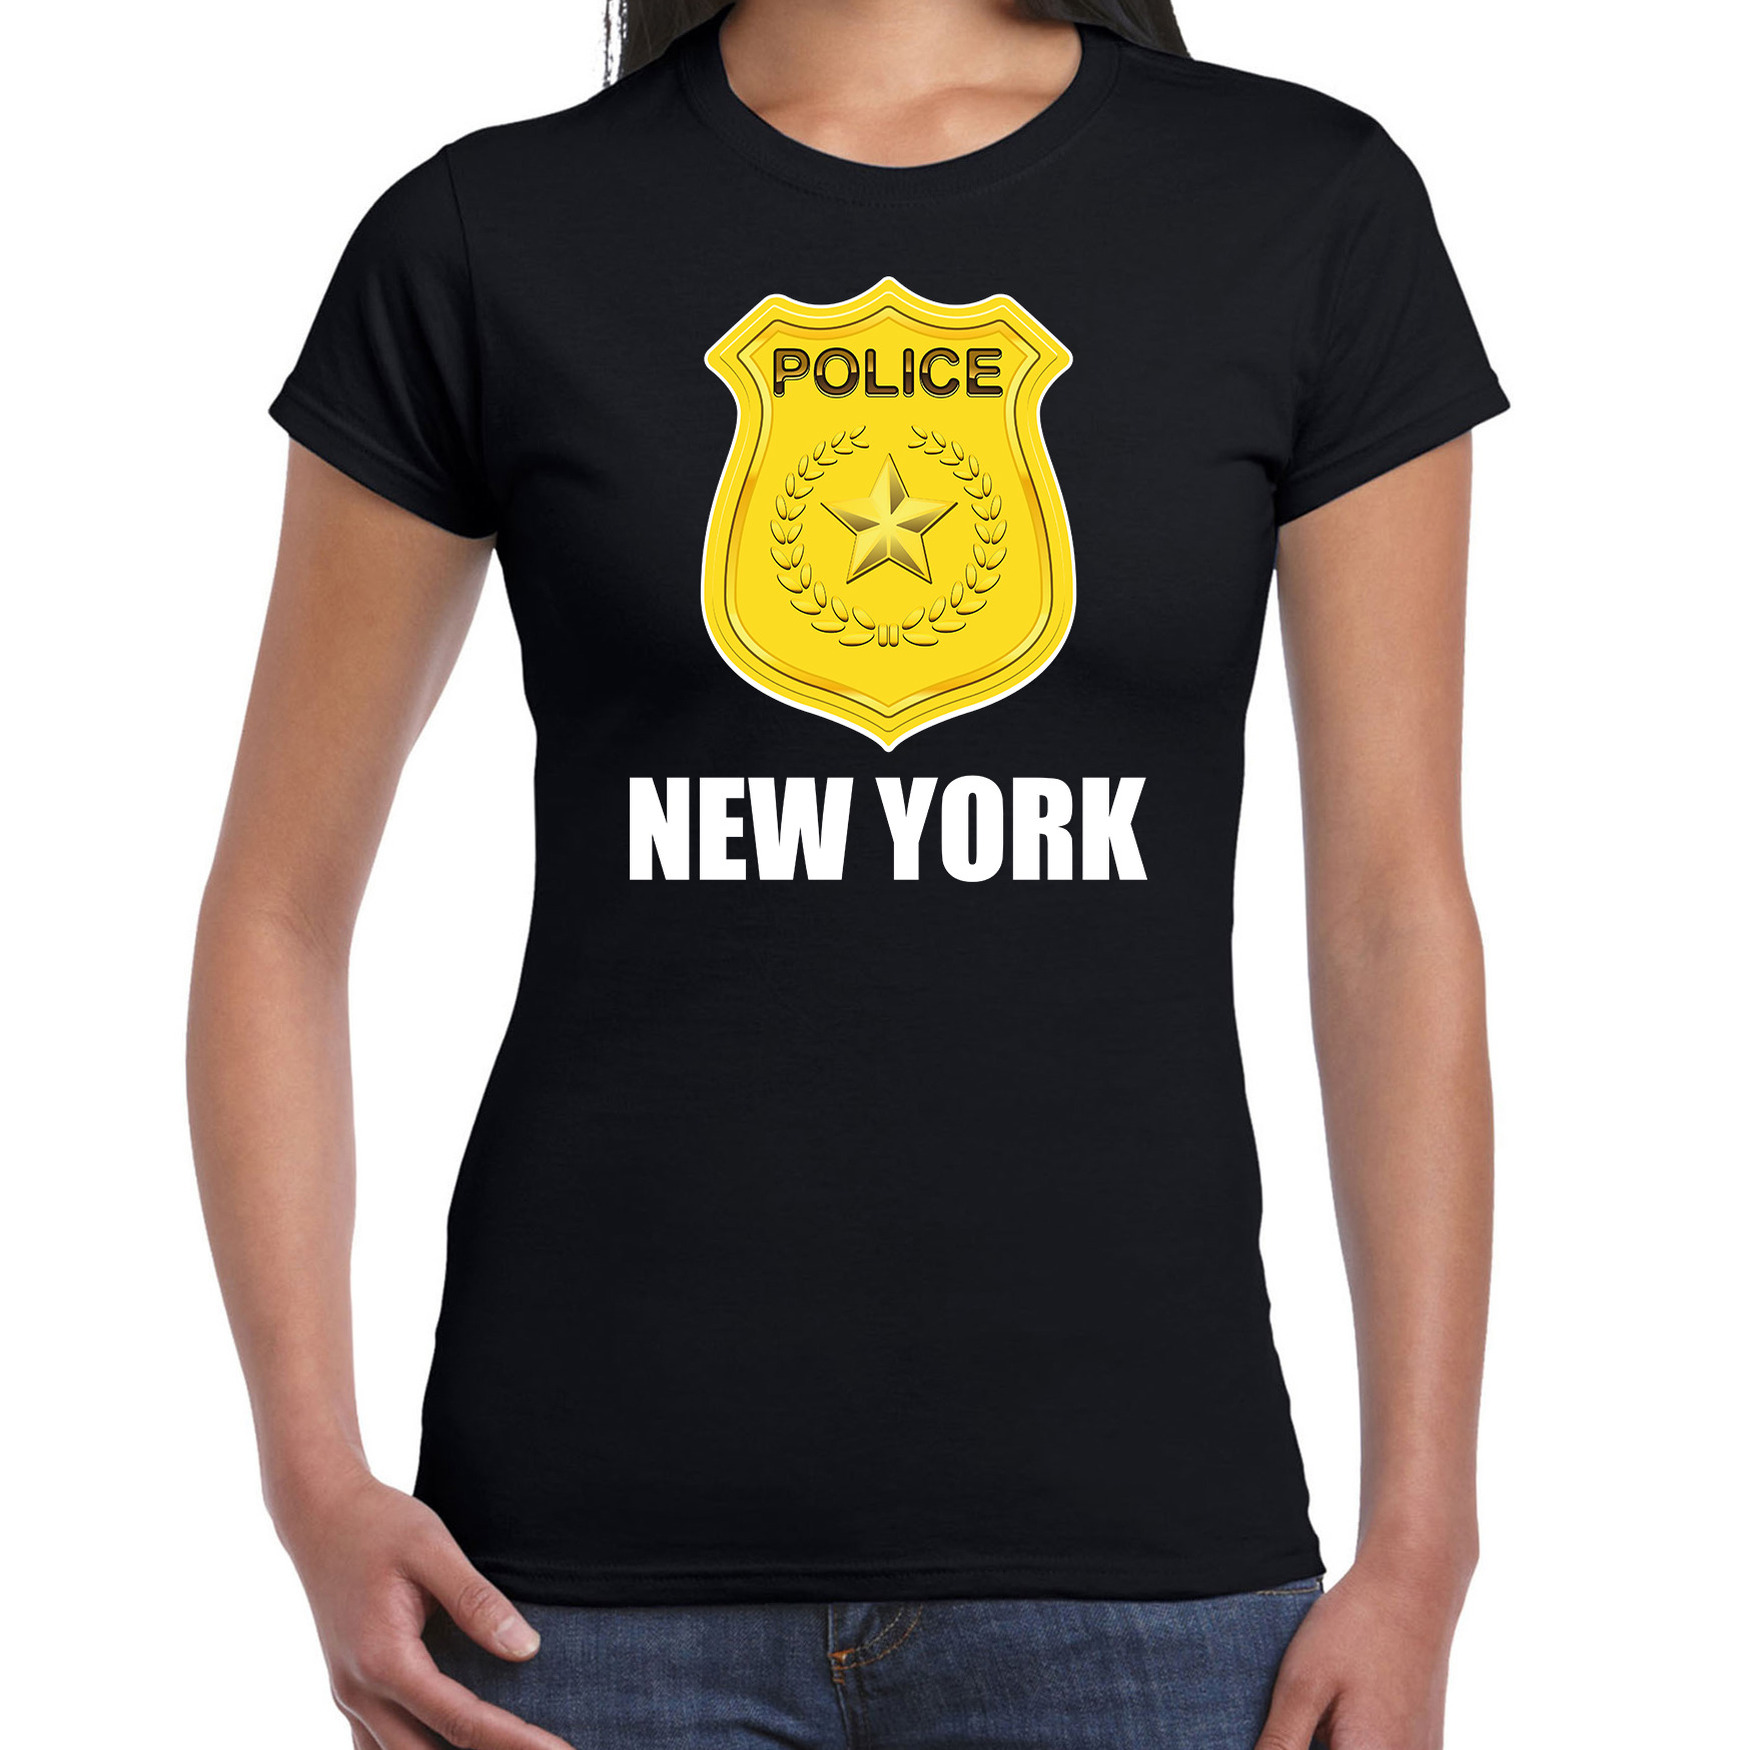 New York politie-police embleem t-shirt zwart voor dames